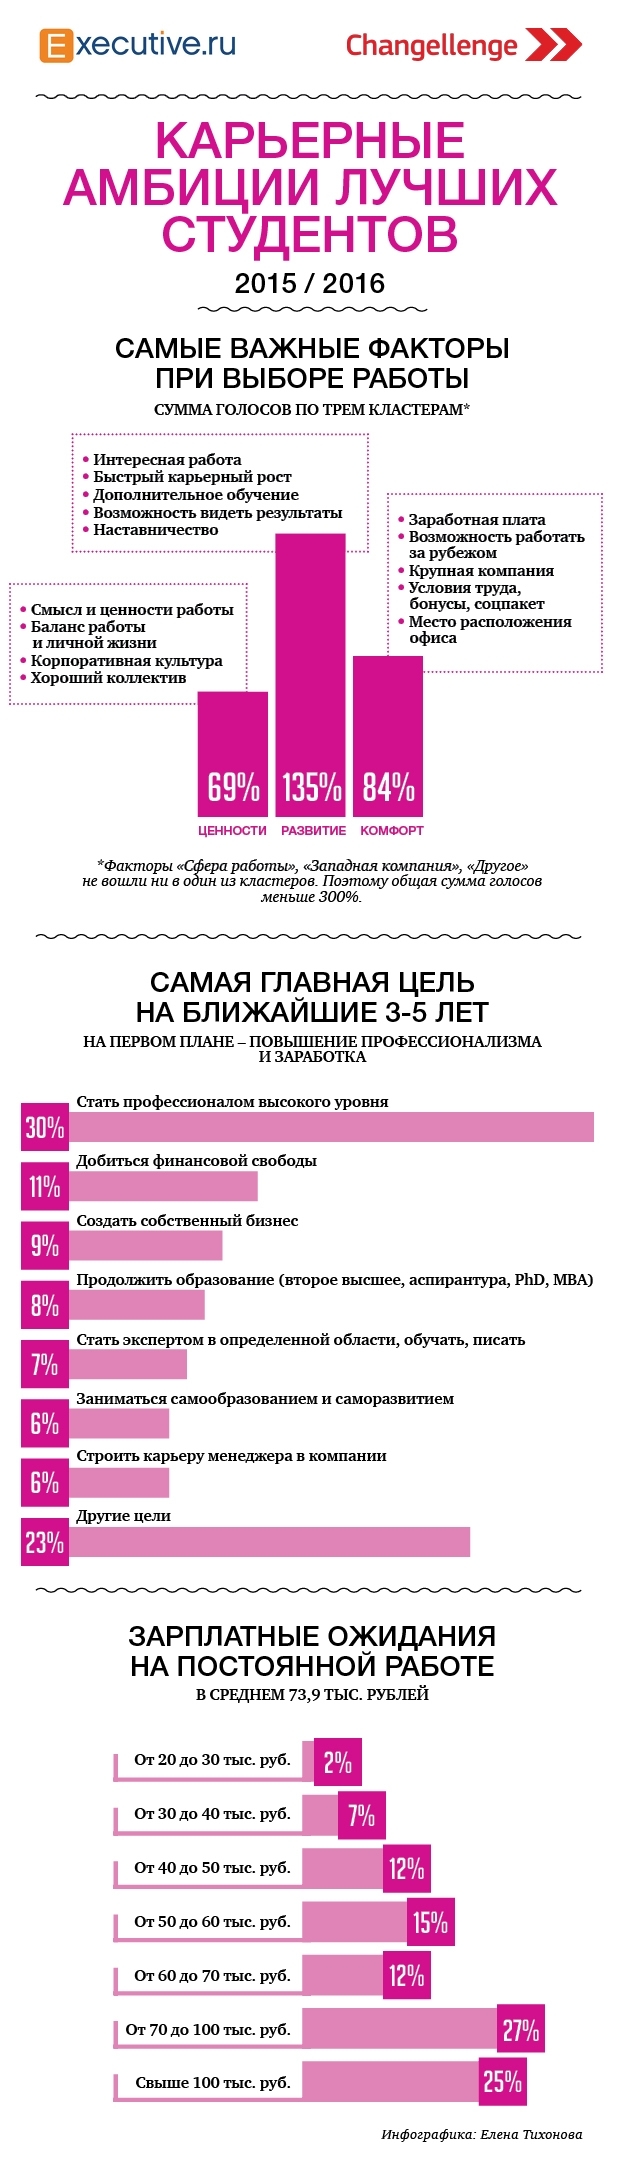 Карьера и цели студентов в России